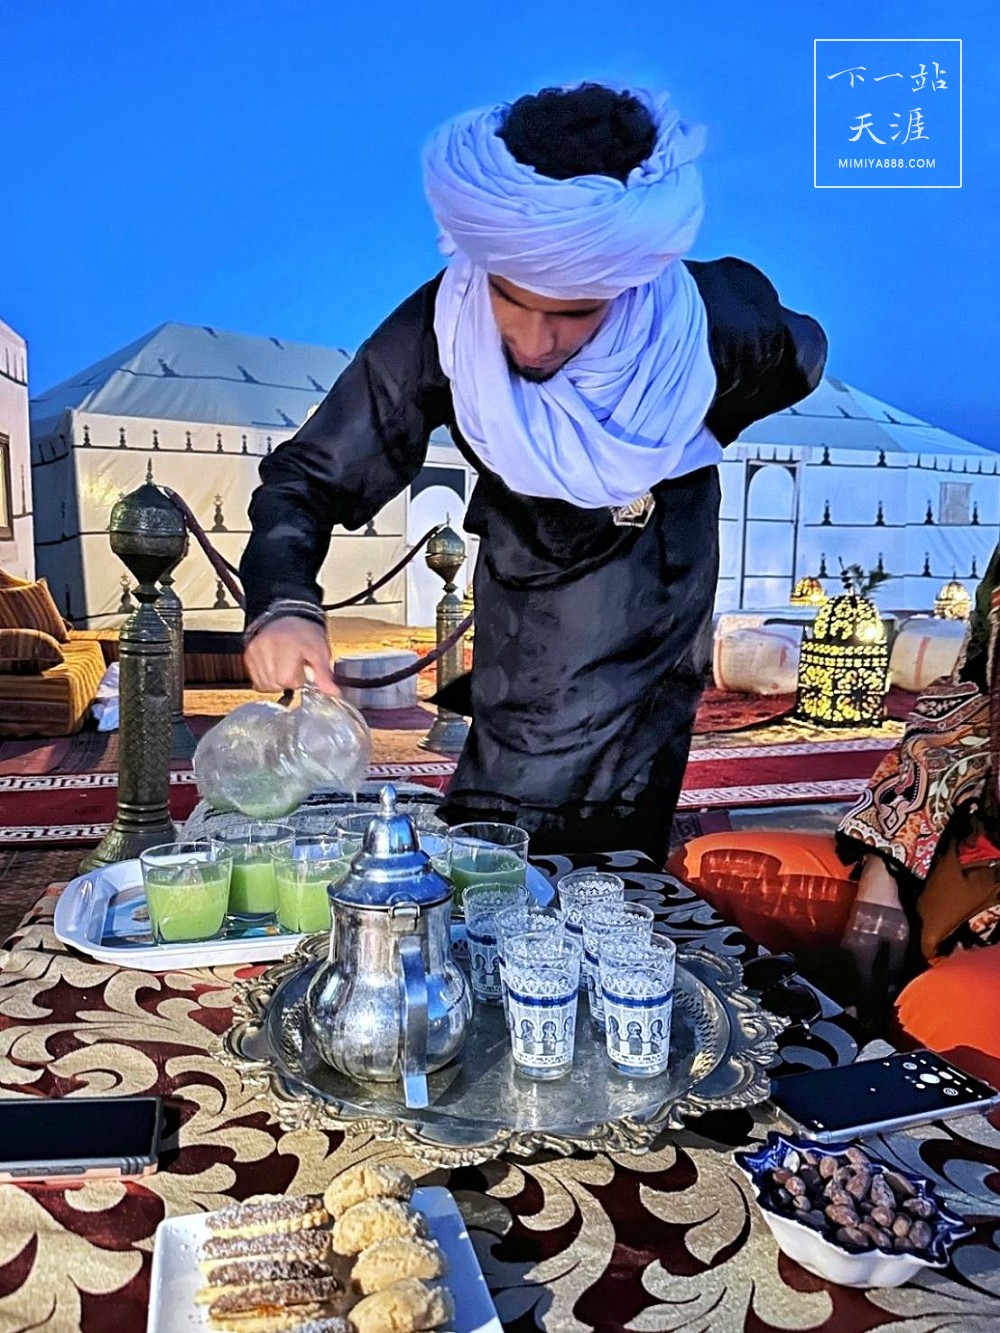 【摩洛哥】入住撒哈拉魔力奢華露營Sahara Magic Luxury Camp一泊二食深度體驗沙漠生活，24小時熱水、抽水馬桶、彈簧床、電力應有盡有